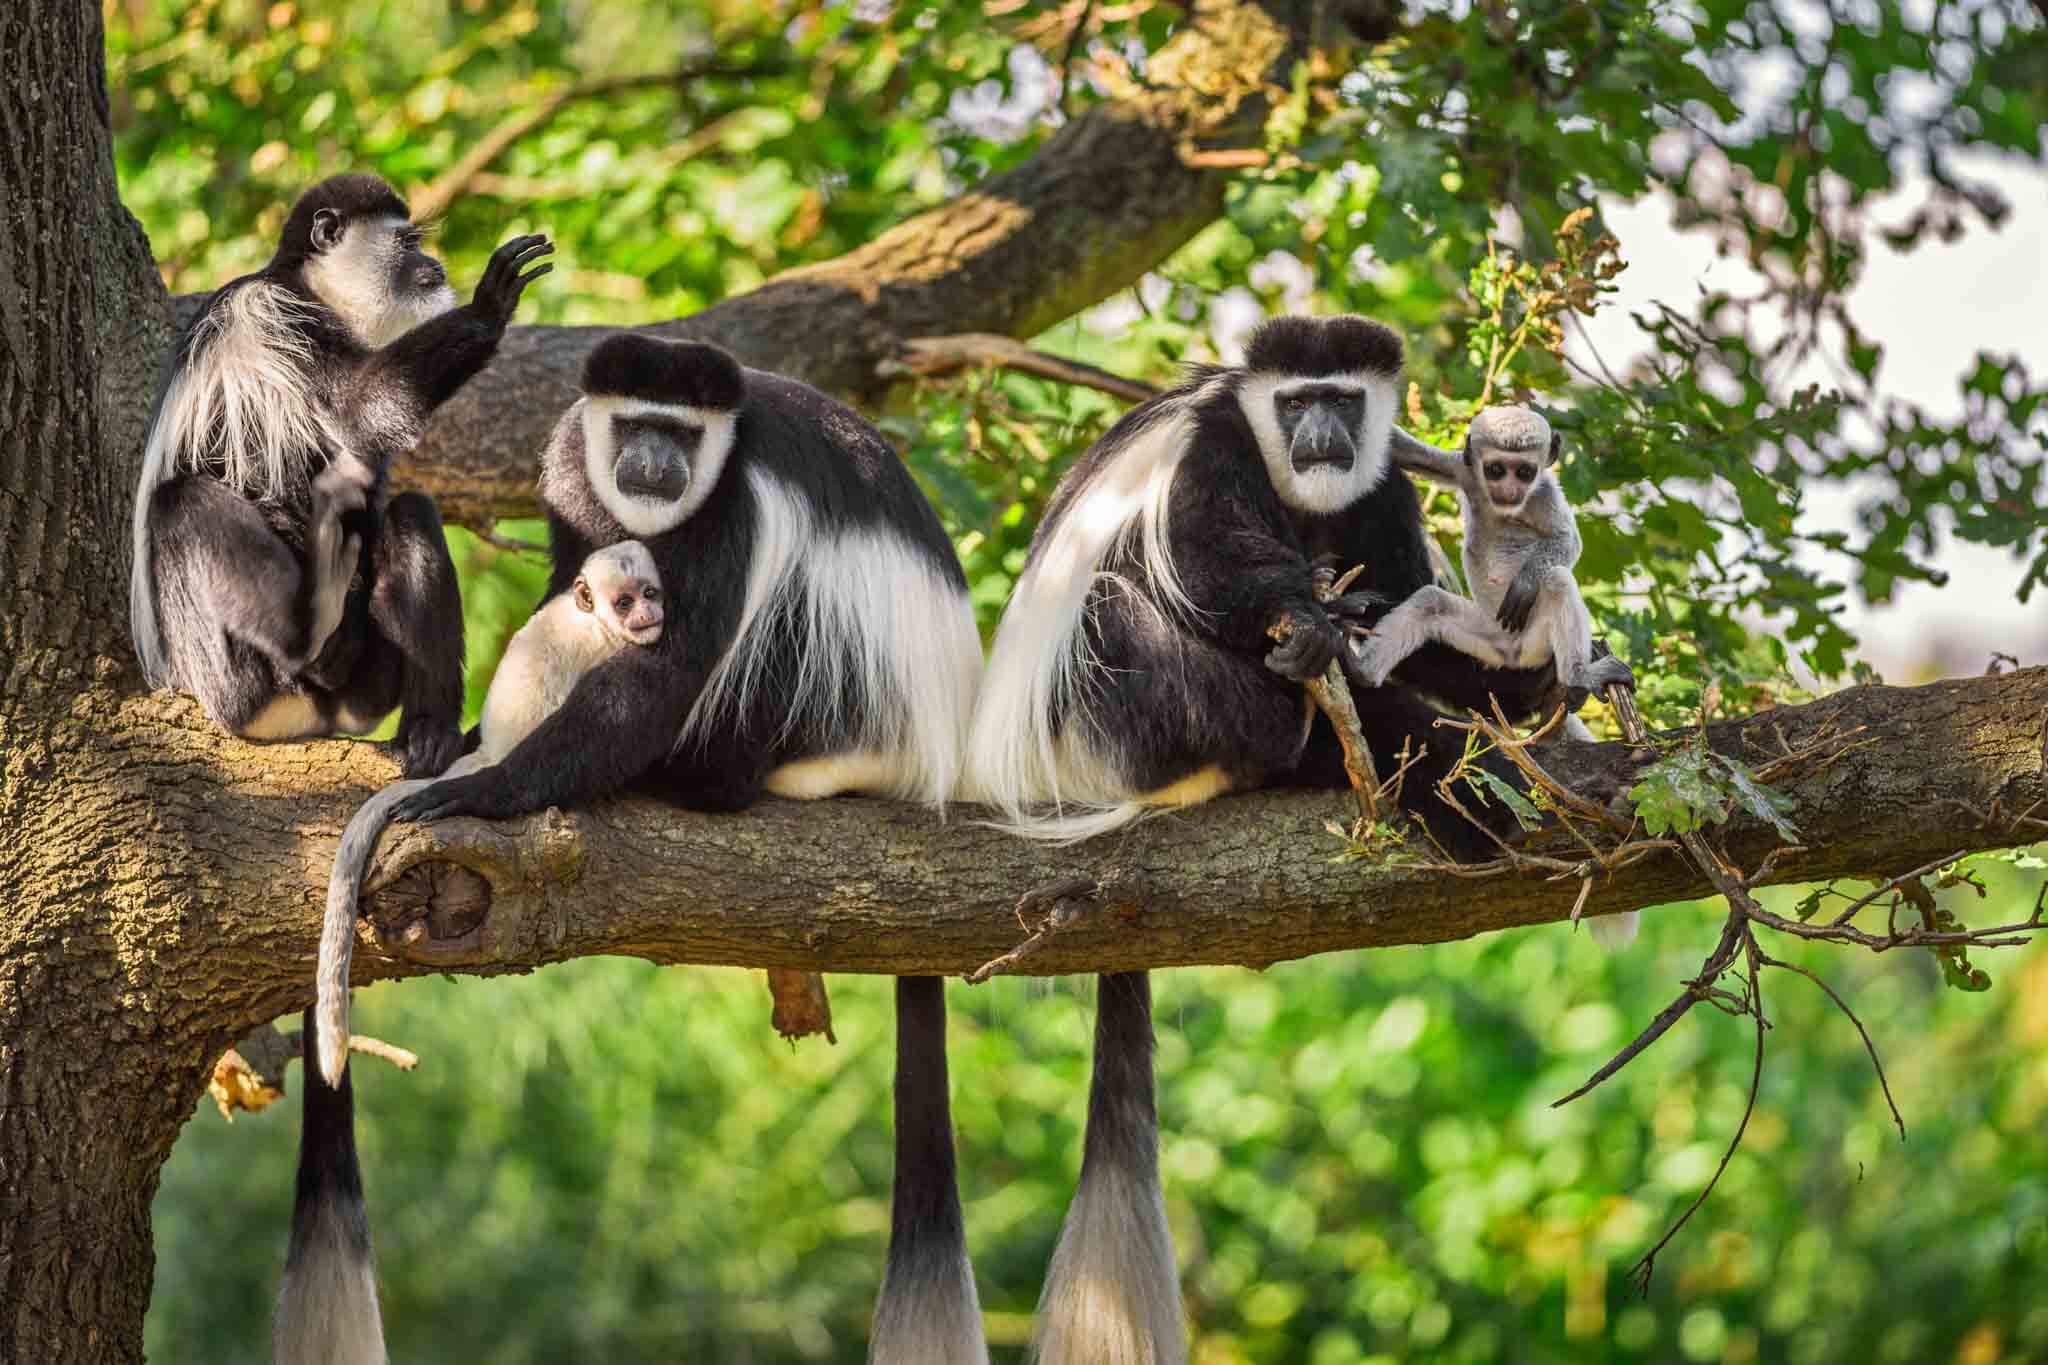 Monkeys in Arusha National Park